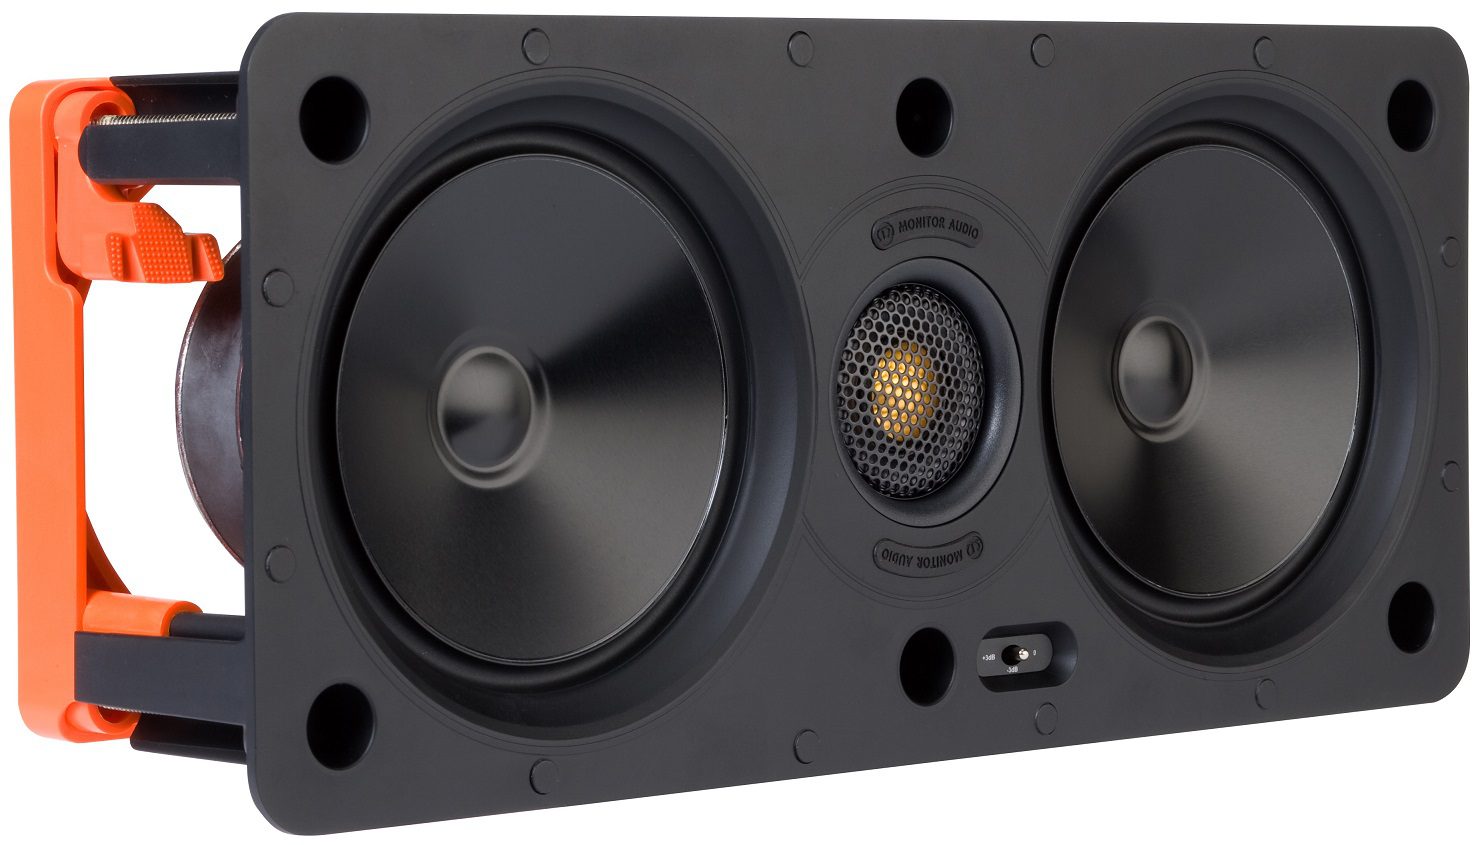 Monitor Audio W250-LCR - Inbouw speaker